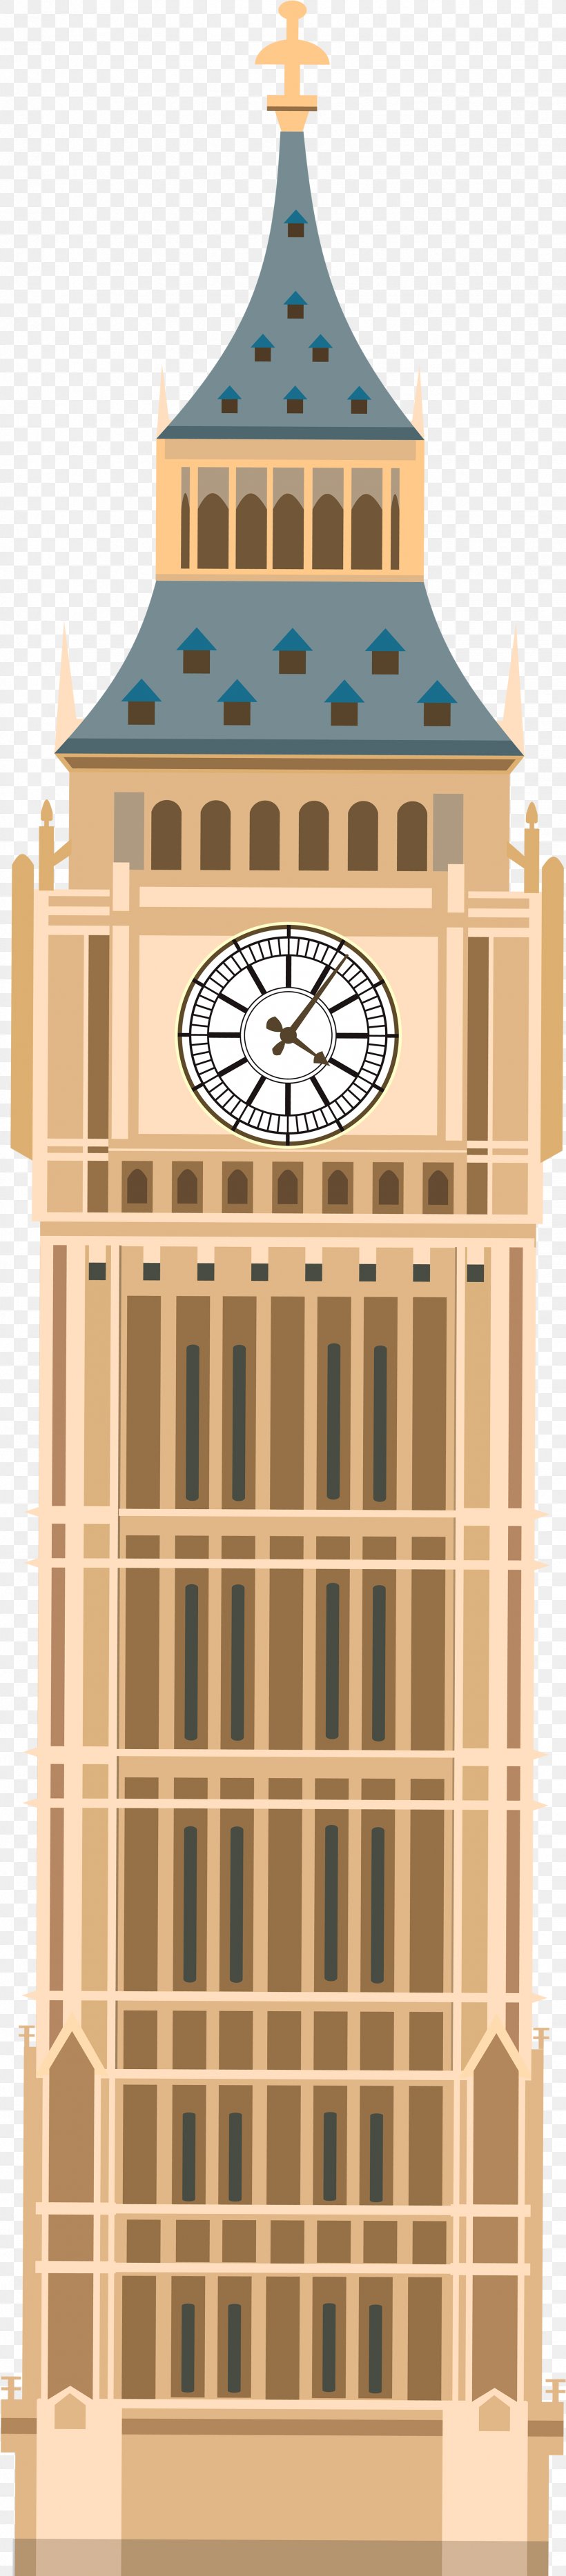 Big Ben Clip Art Transparency Vector Graphics, PNG, 1737x7912px, Big Ben, Analog Watch, Beige, Clock, Clock Tower Download Free